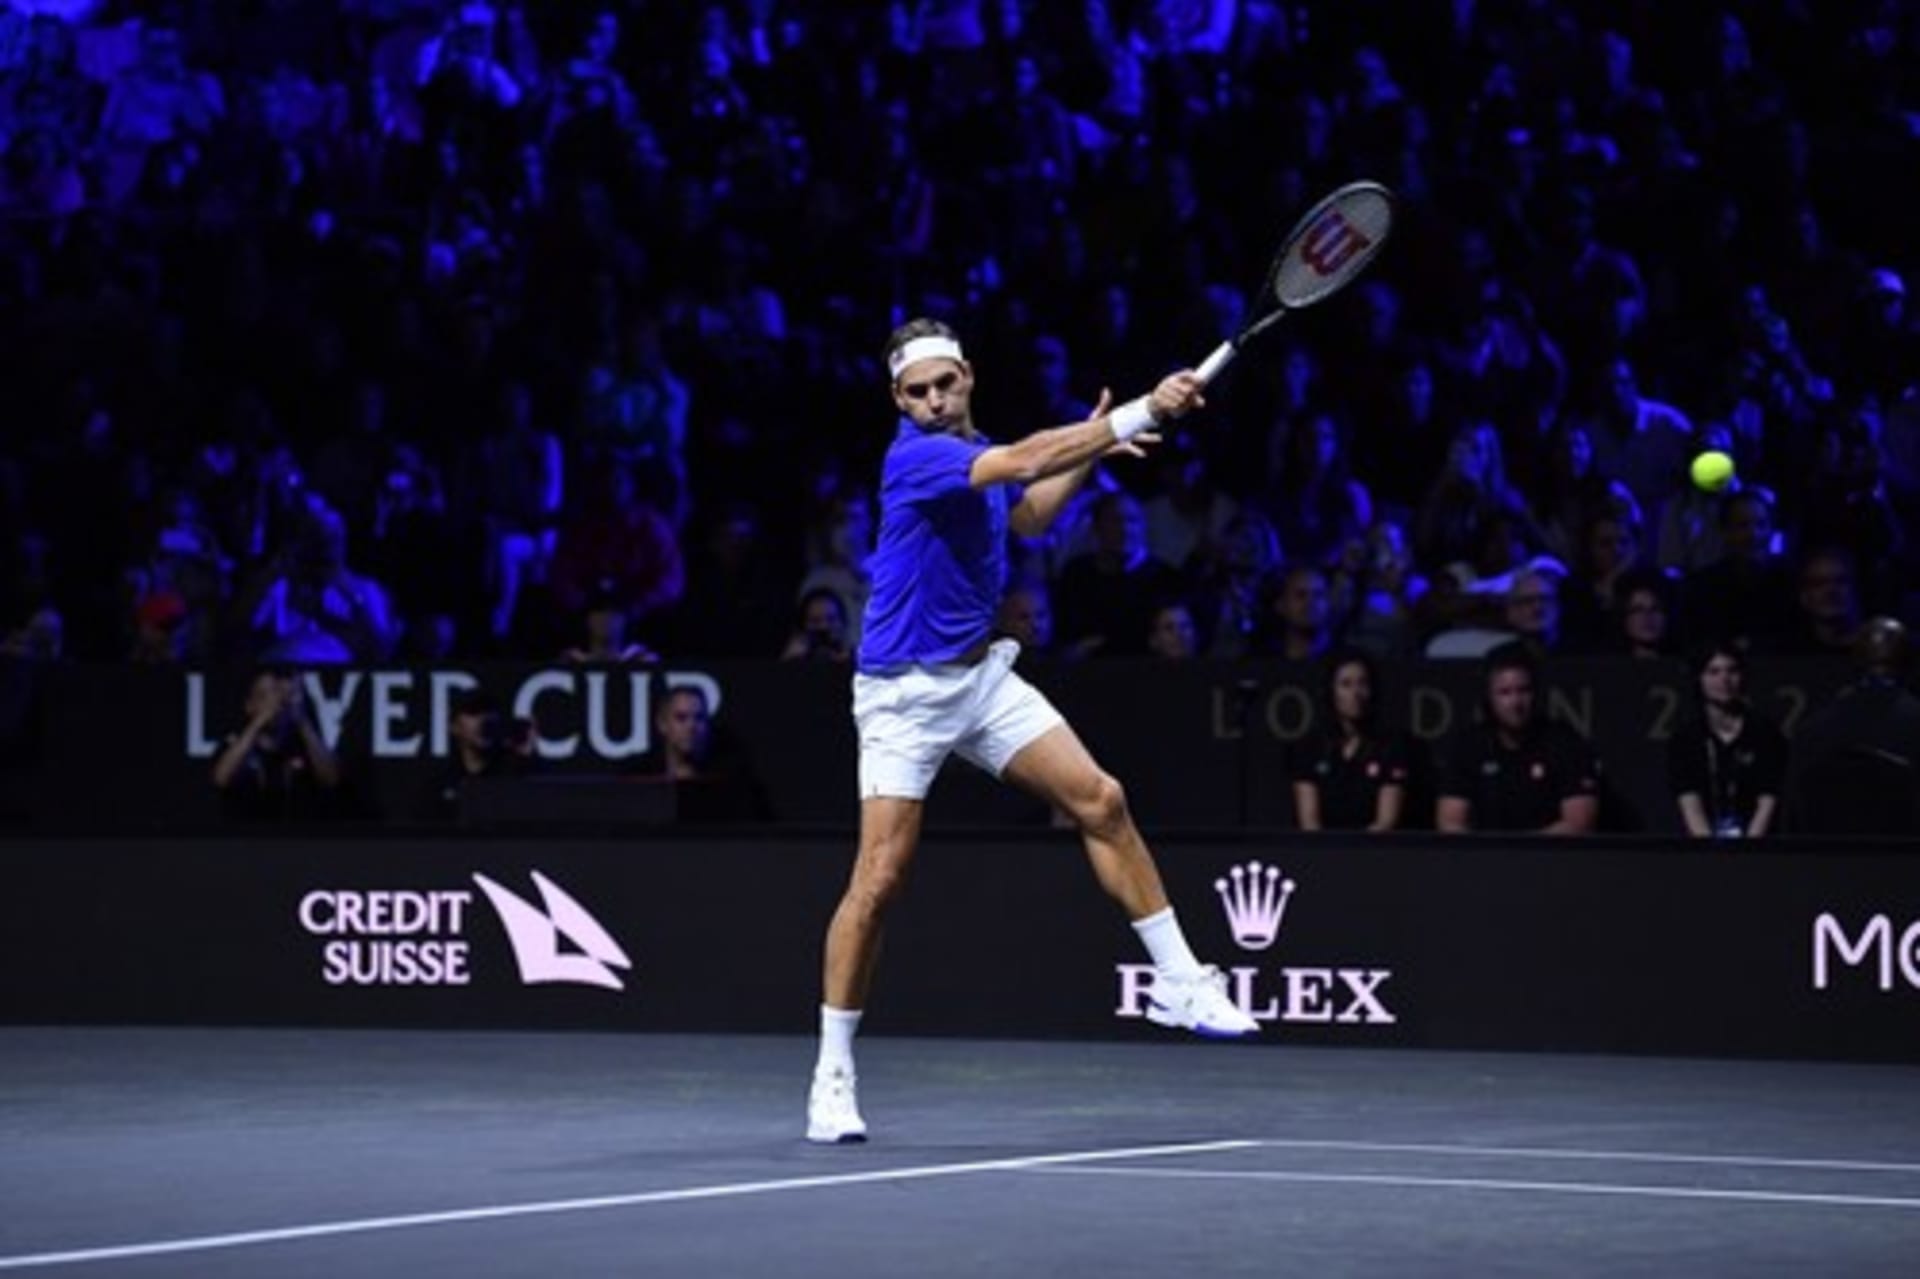 Tenisový fenomén a vítěz 20 grandslamových titulů Roger Federer prožil dojemné loučení se sportovní kariérou.